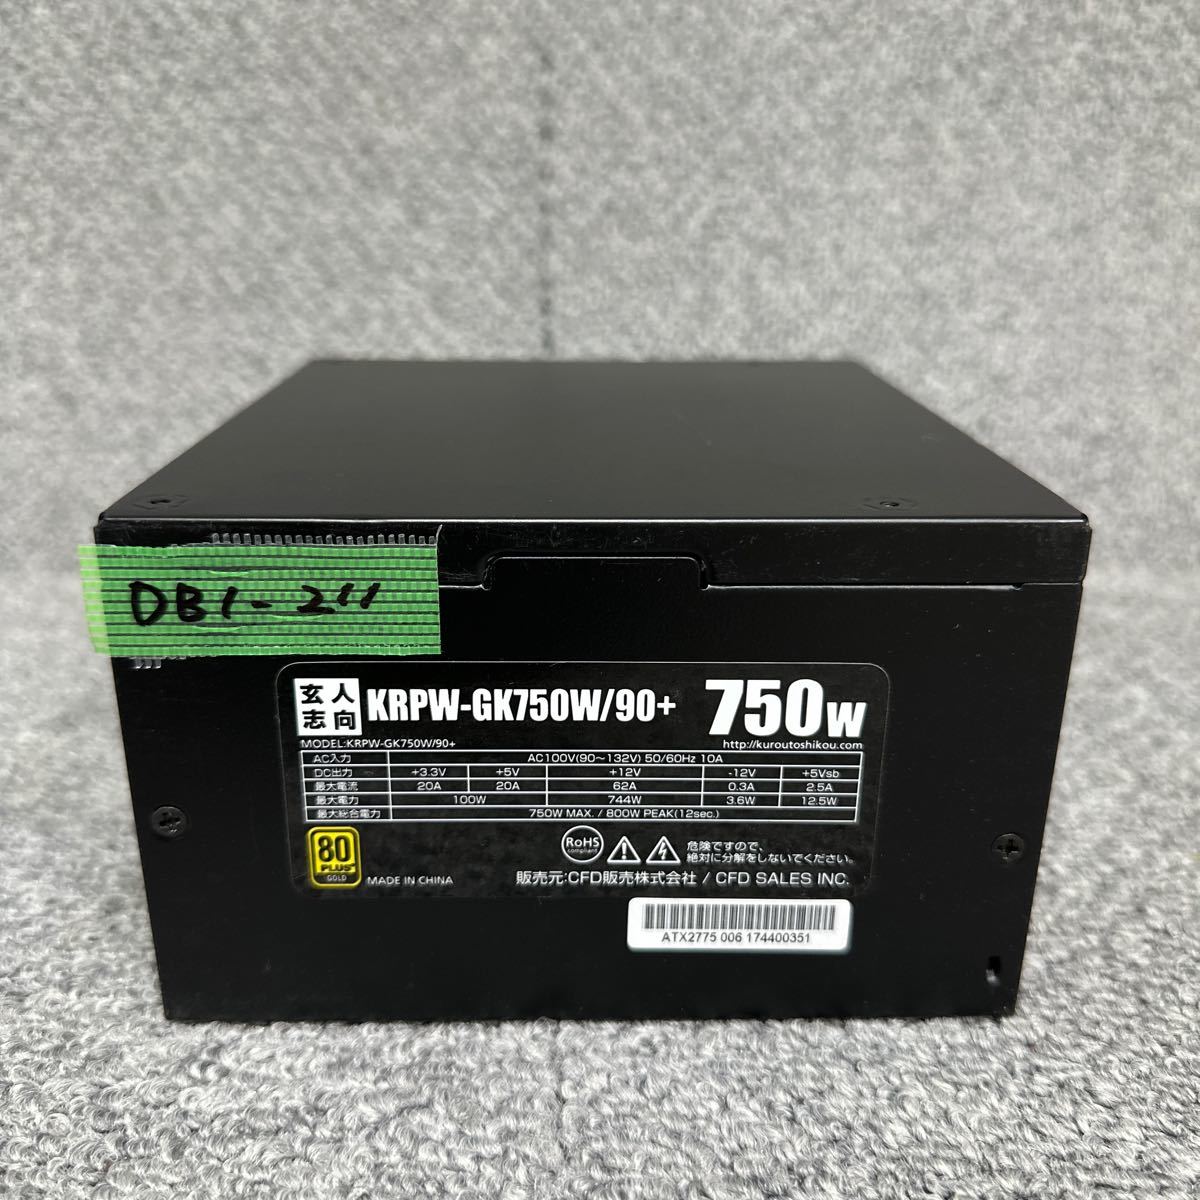 DB1-211  очень дешево  PC  Электропитание BOX  для профессионалов   KRPW-GK750W/90+ 750W  Электропитание  блок   включение питания  не проверена   подержанный товар 